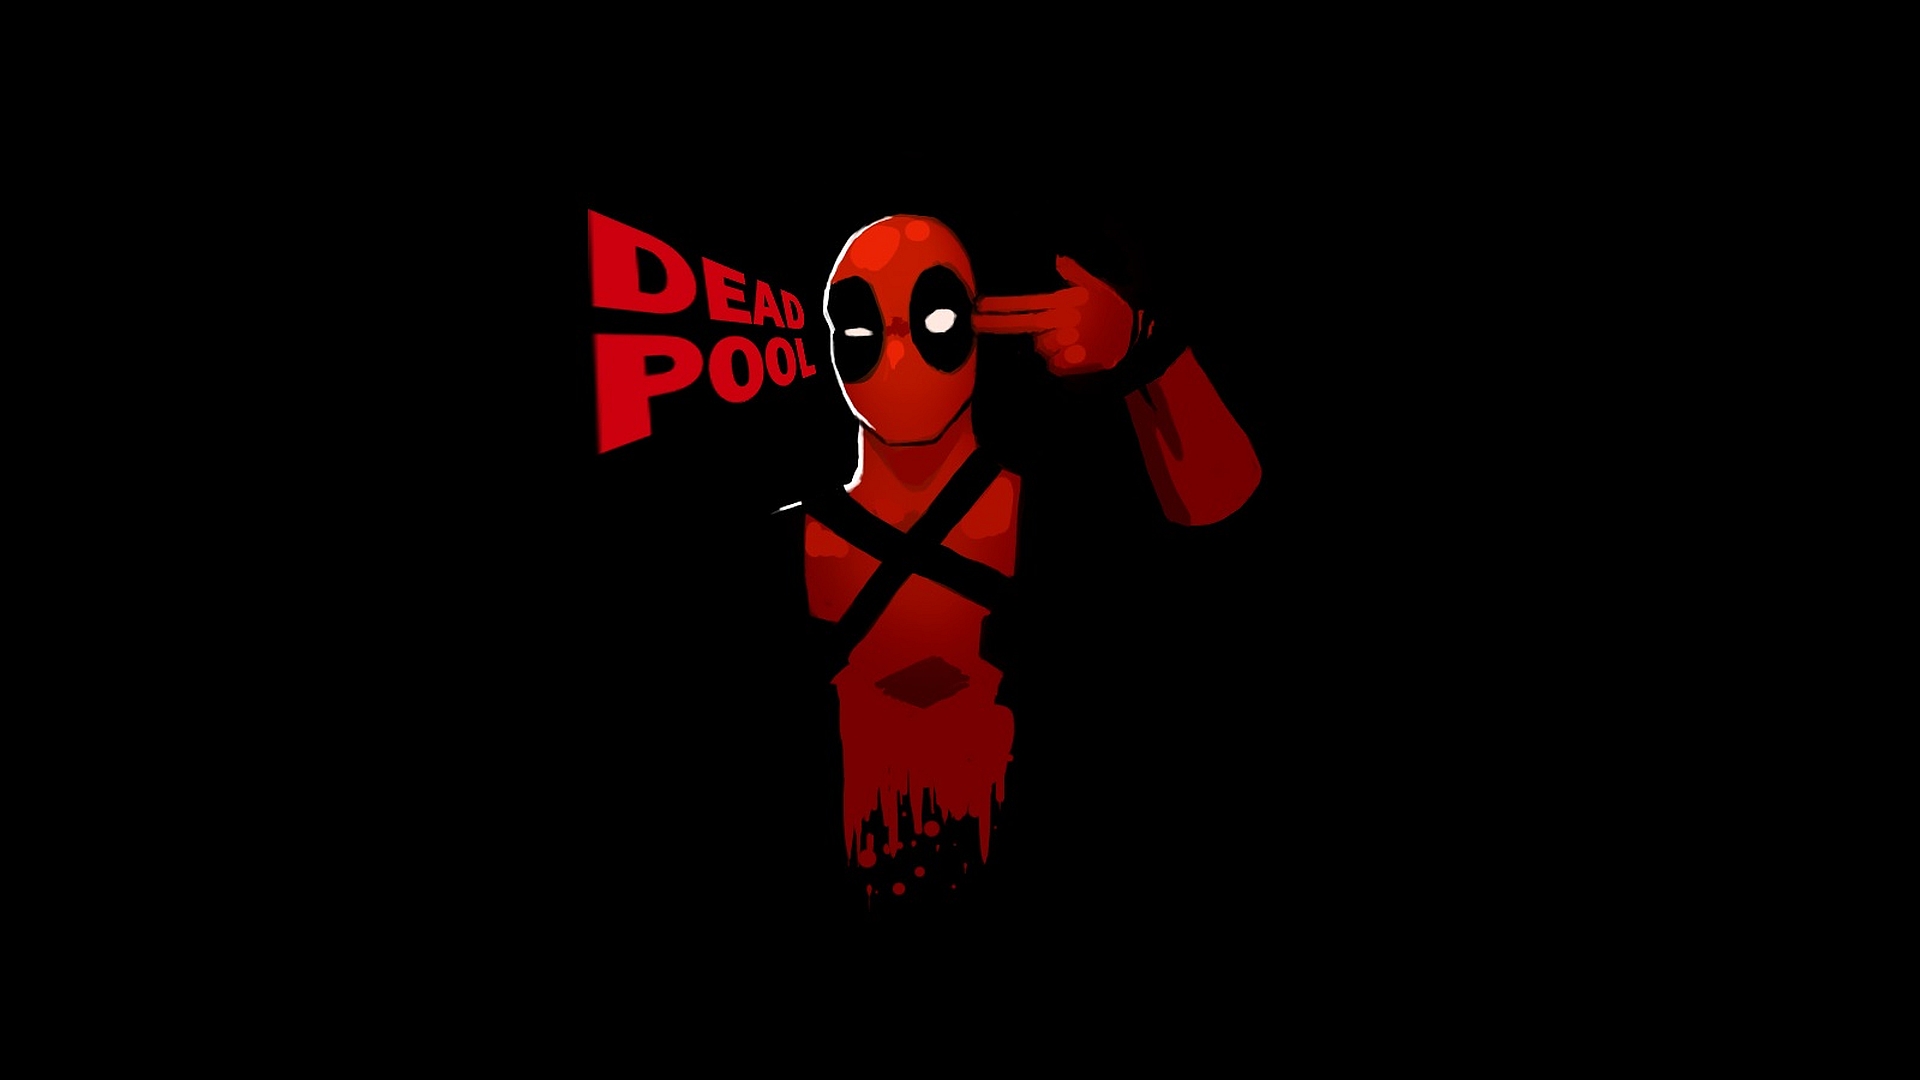 Deadpool wallpaper HD free download | PixelsTalk Net